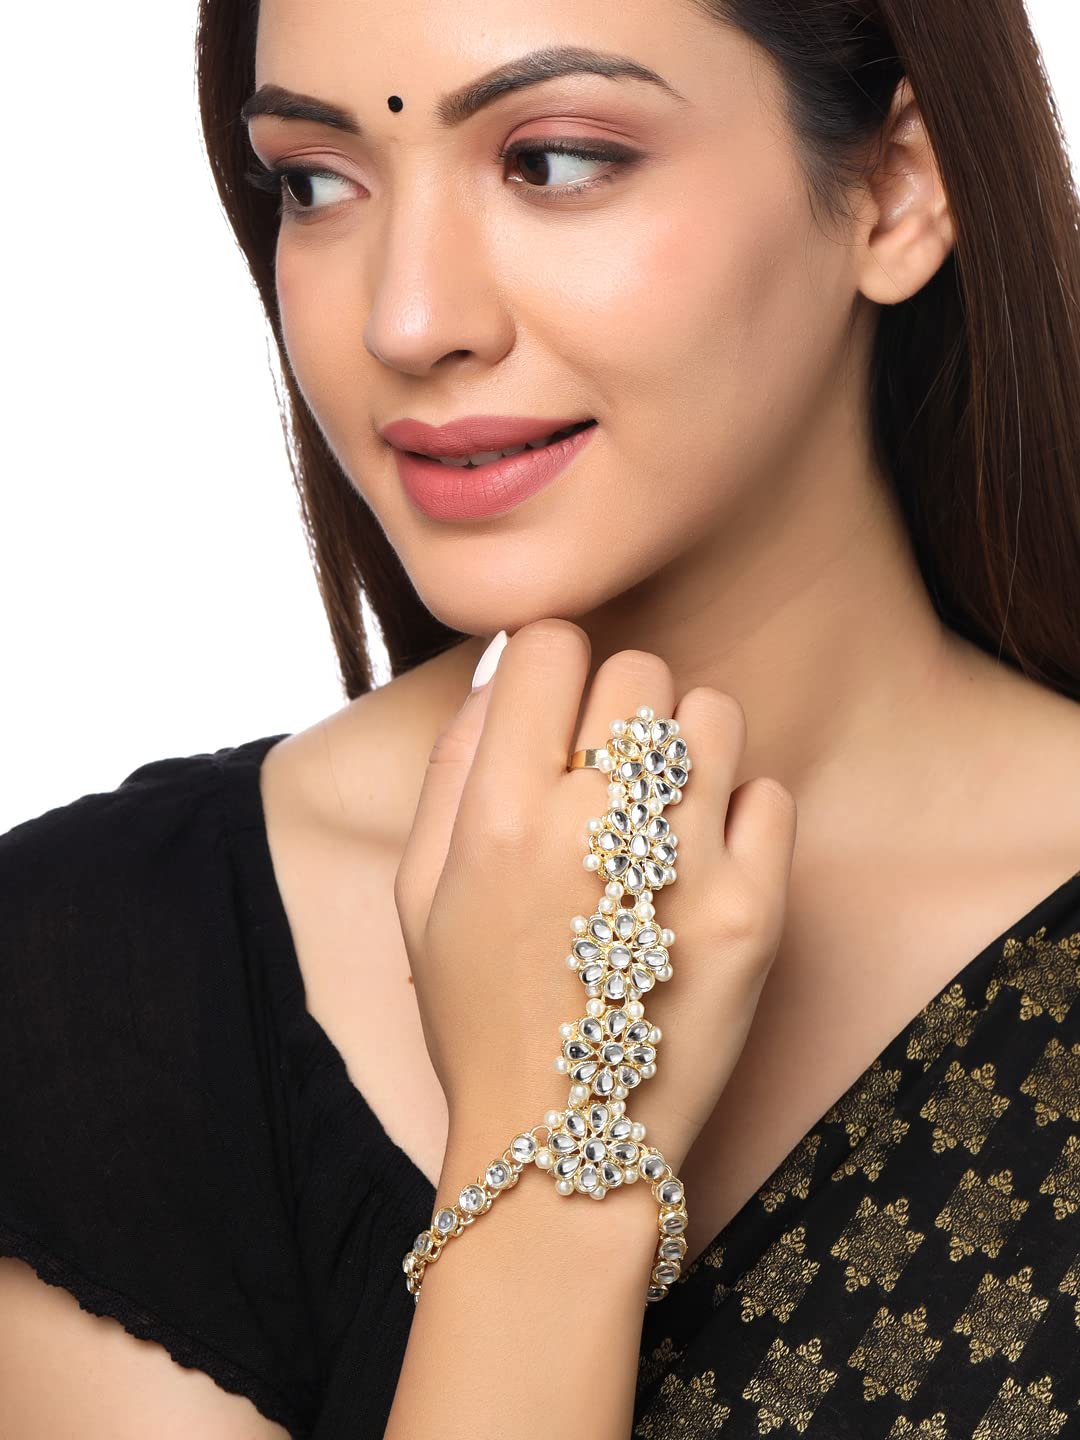 Womensky Golden hand Bracelet Finger Ring Bracelet for Women and Girls: Buy  Womensky Golden hand Bracelet Finger Ring Bracelet for Women and Girls  Online in India on Snapdeal